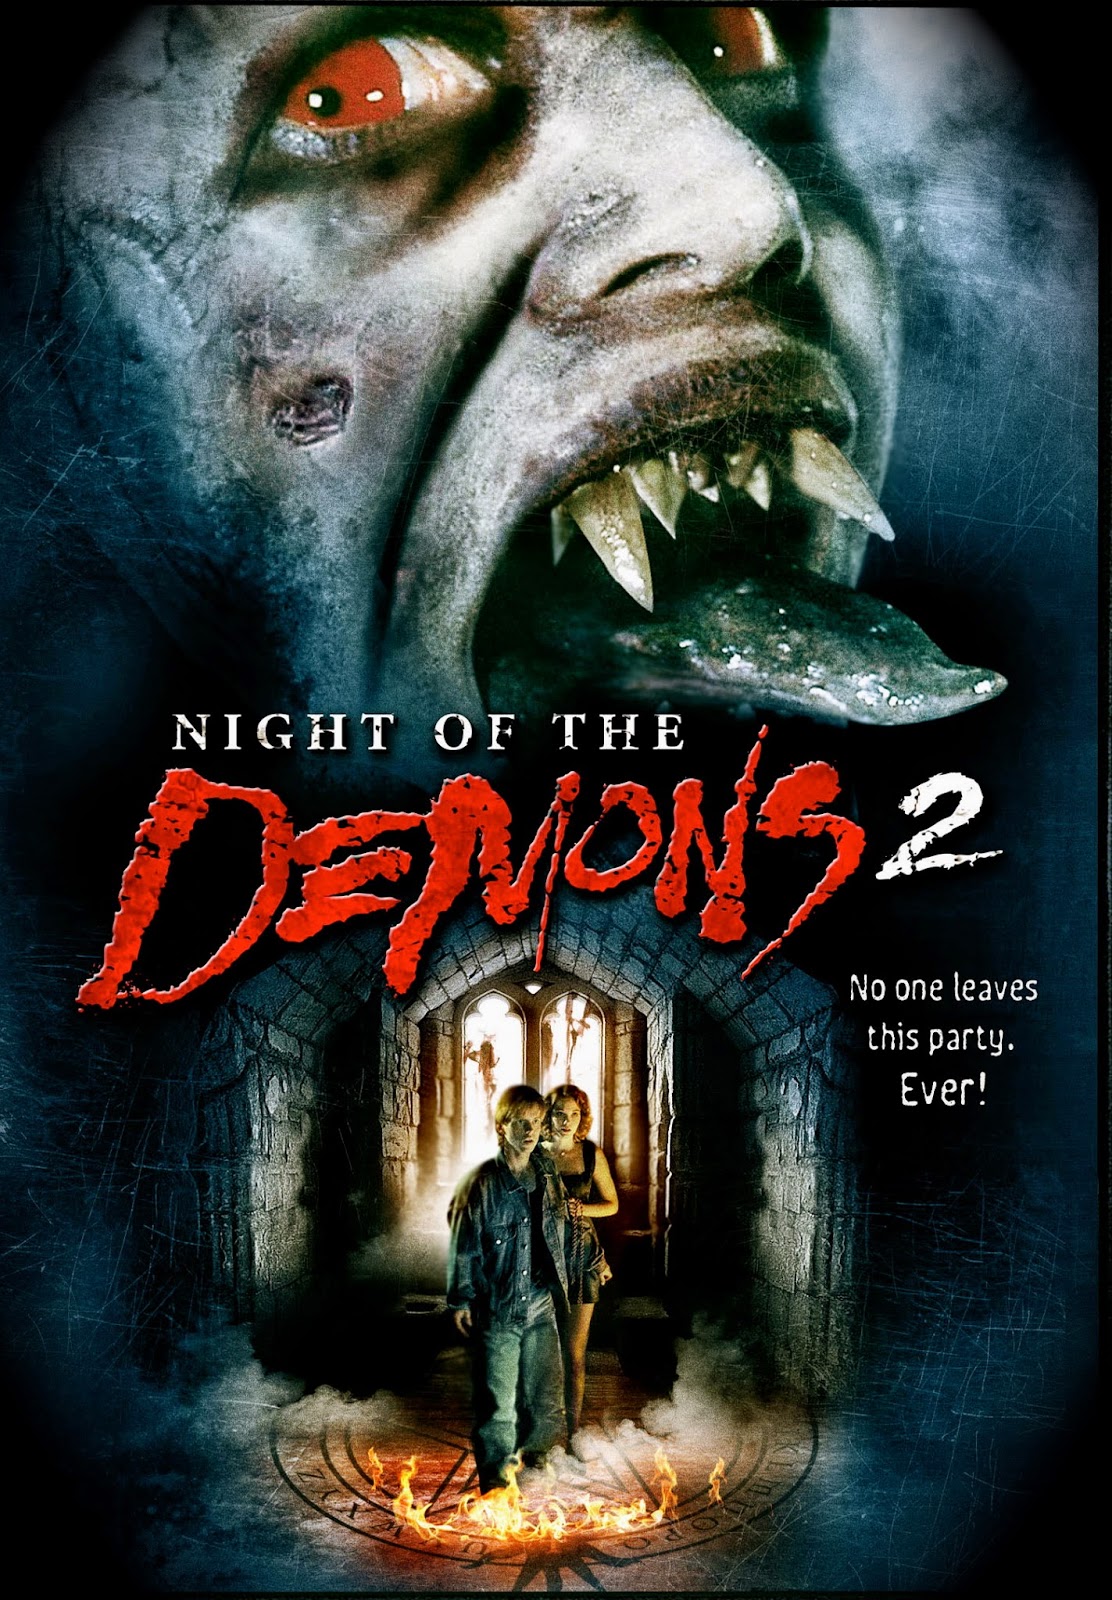 NIGHT OF THE DEMONS 2 (1994) LA NOCHE DE LOS DEMONIOS 2 - Subtitulada - Imagenes De La Pelicula De La Noche Del Demonio